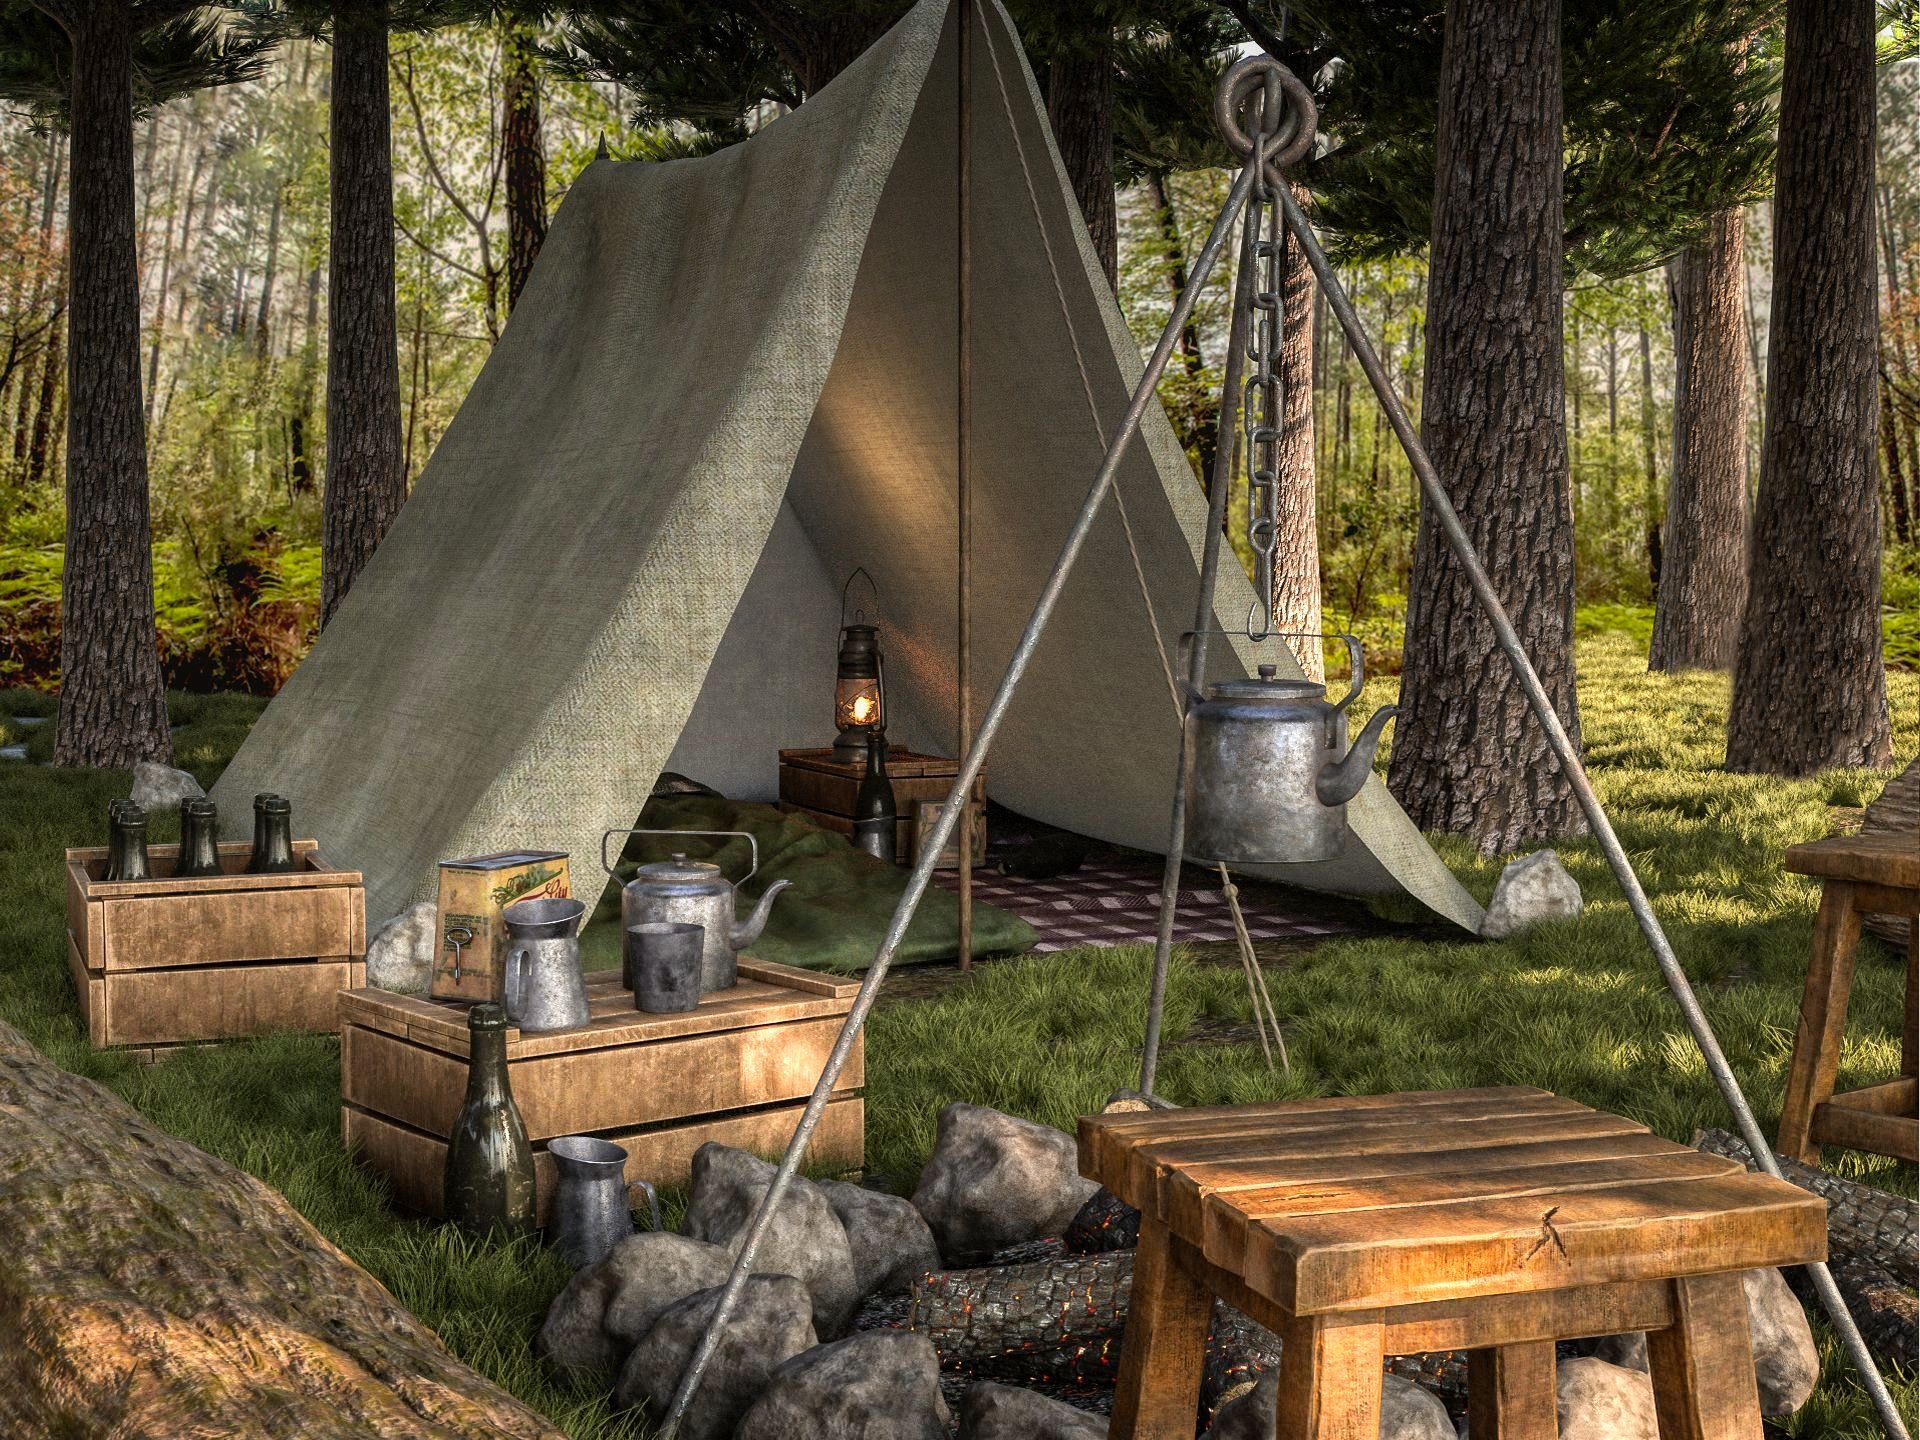 Camping name. Рыцарский шатер. Лагерь палатки в сасновом лесу у реки Кастер снаряжение. Кемпинг городок Северный ветер. Двуопорный Рыцарский шатер барабан.